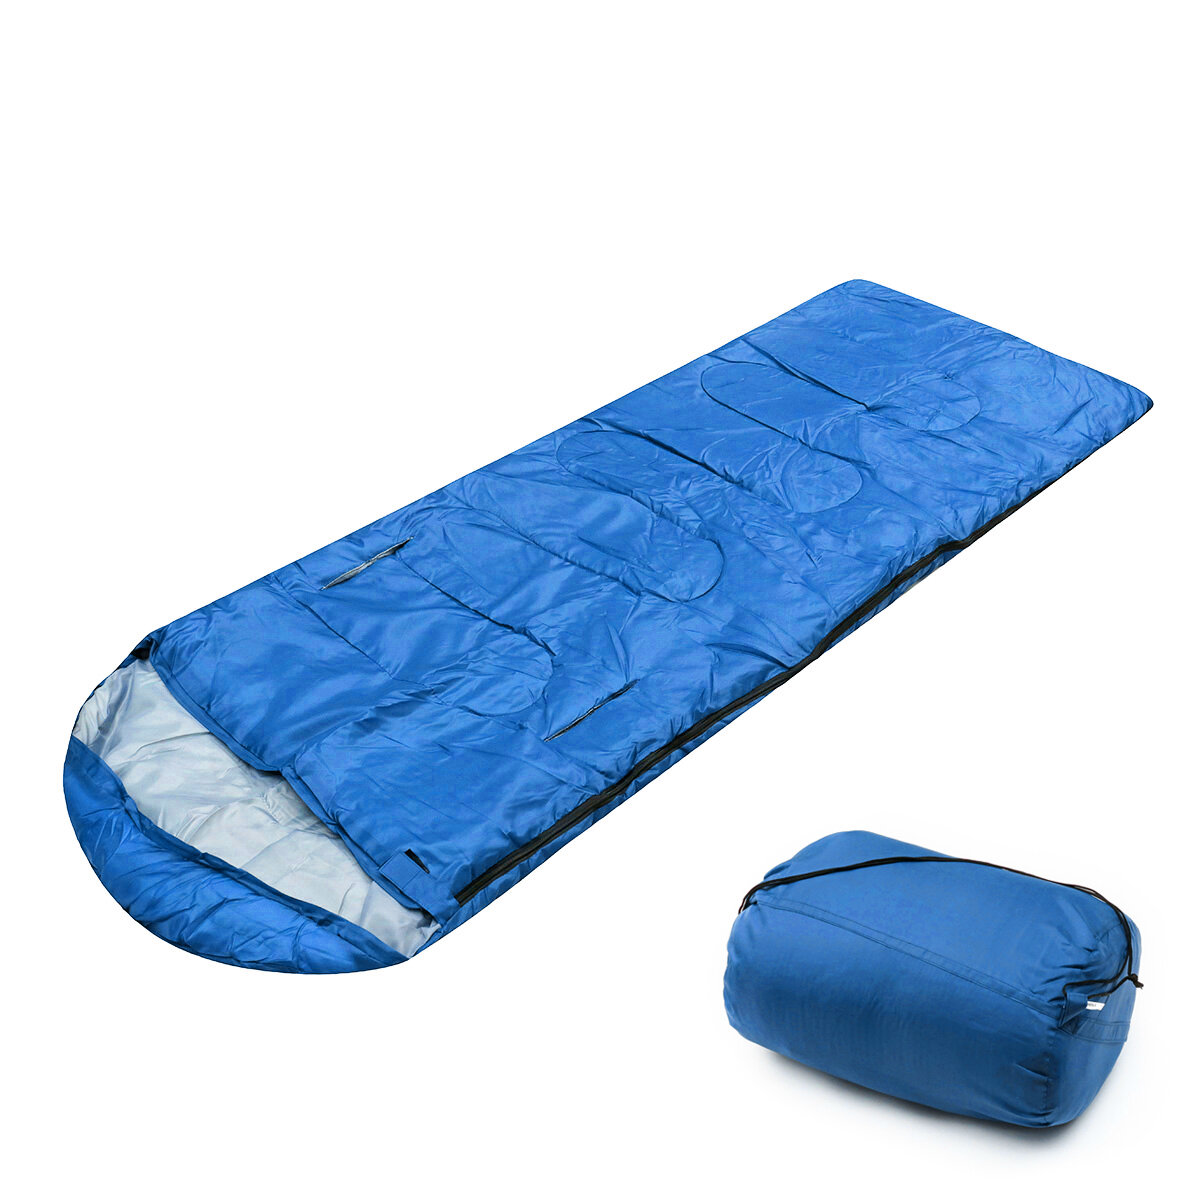 10x75CM Waterproof Camping Envelope Sleeping Bag Outdoor Hiking Backpacking Sleeping Bag with Compre